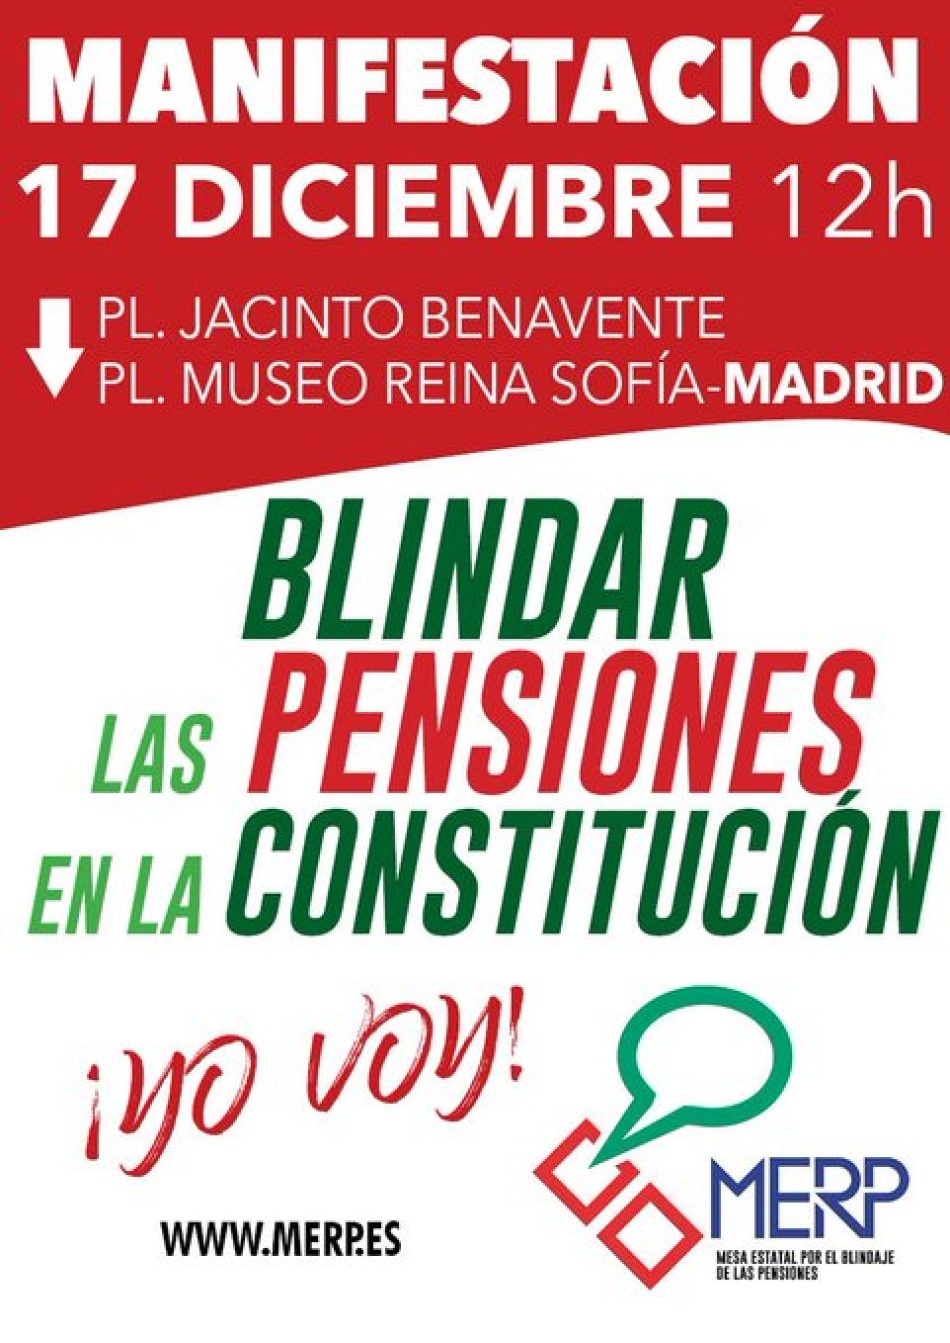 PACMA se adhiere a la manifestación para blindar las pensiones este sábado en Madrid